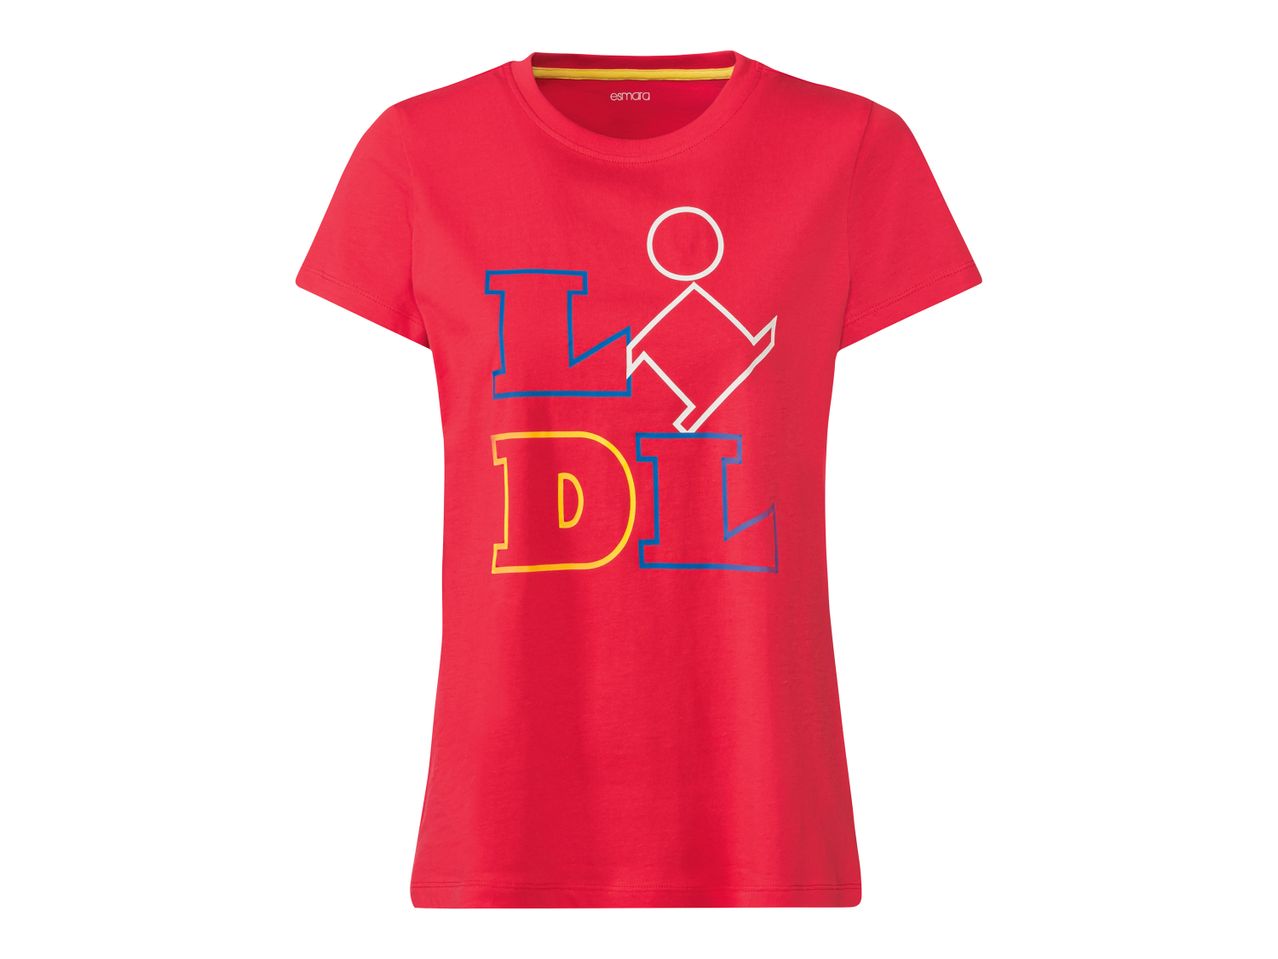 T-shirt da donna Lidl , prezzo 4.99 EUR 
T-shirt da donna 